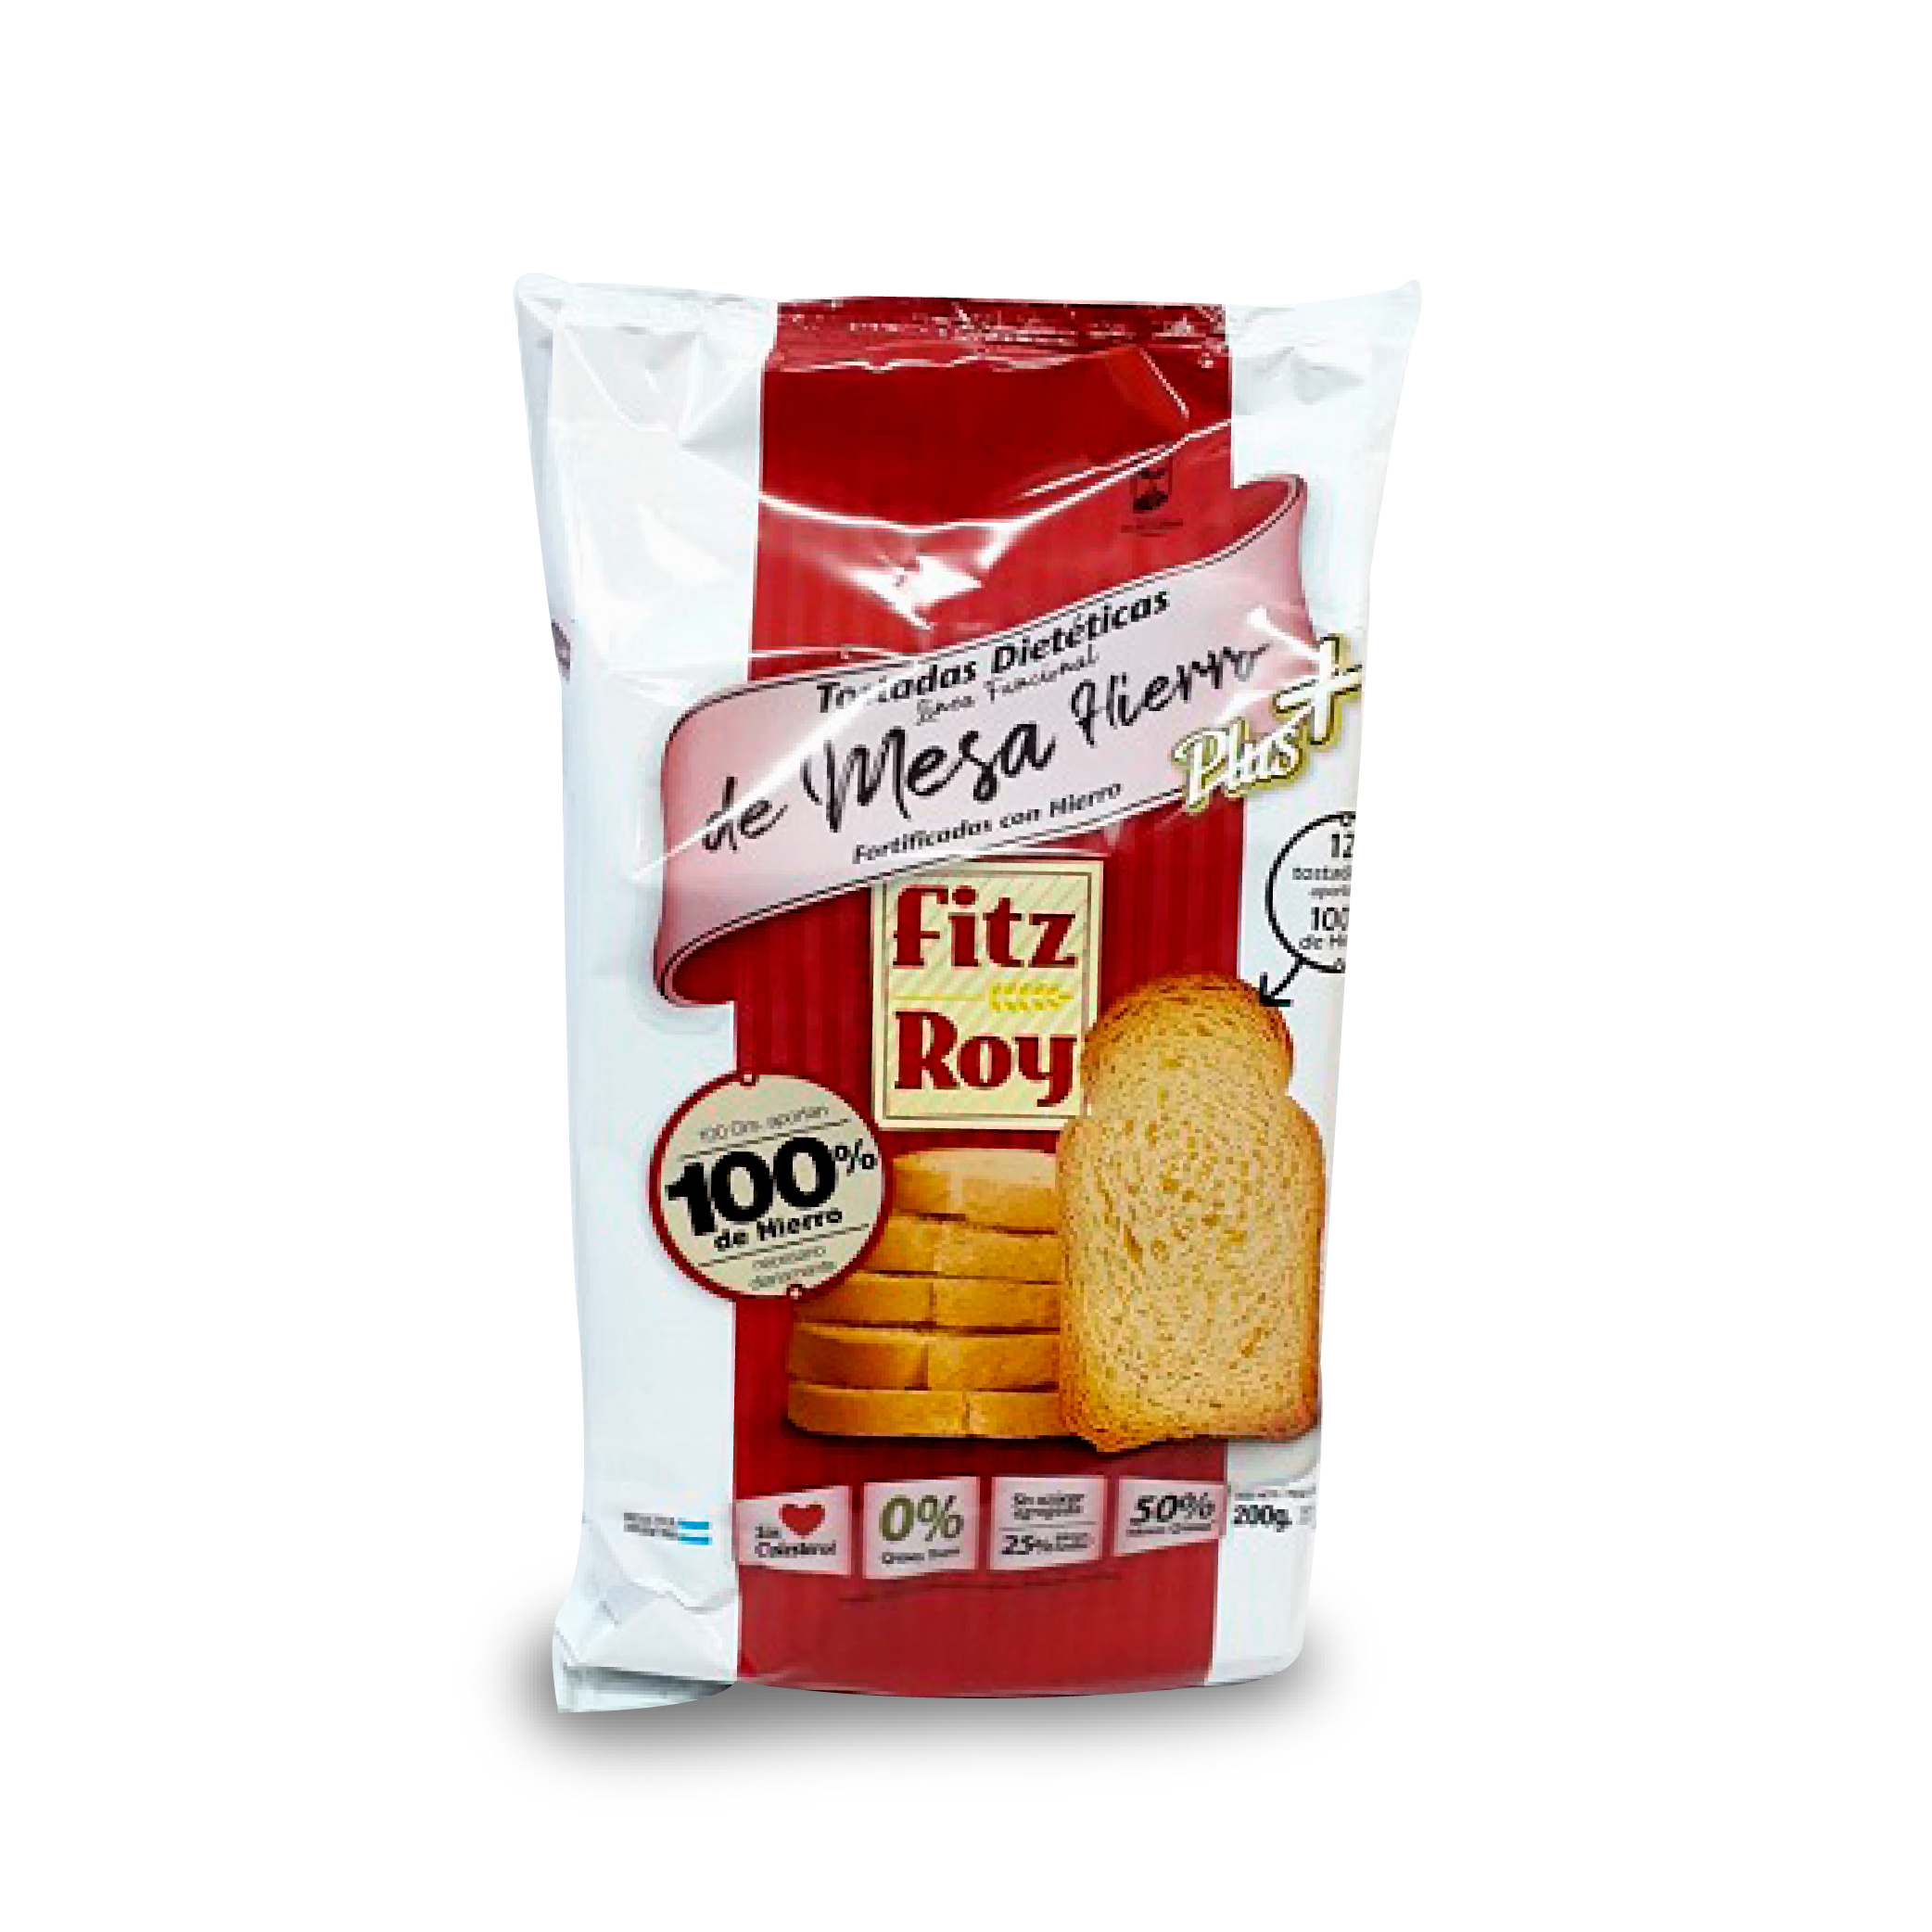 FITZ ROY - Tostadas Diet Hierro Plus 6 x 200 gr